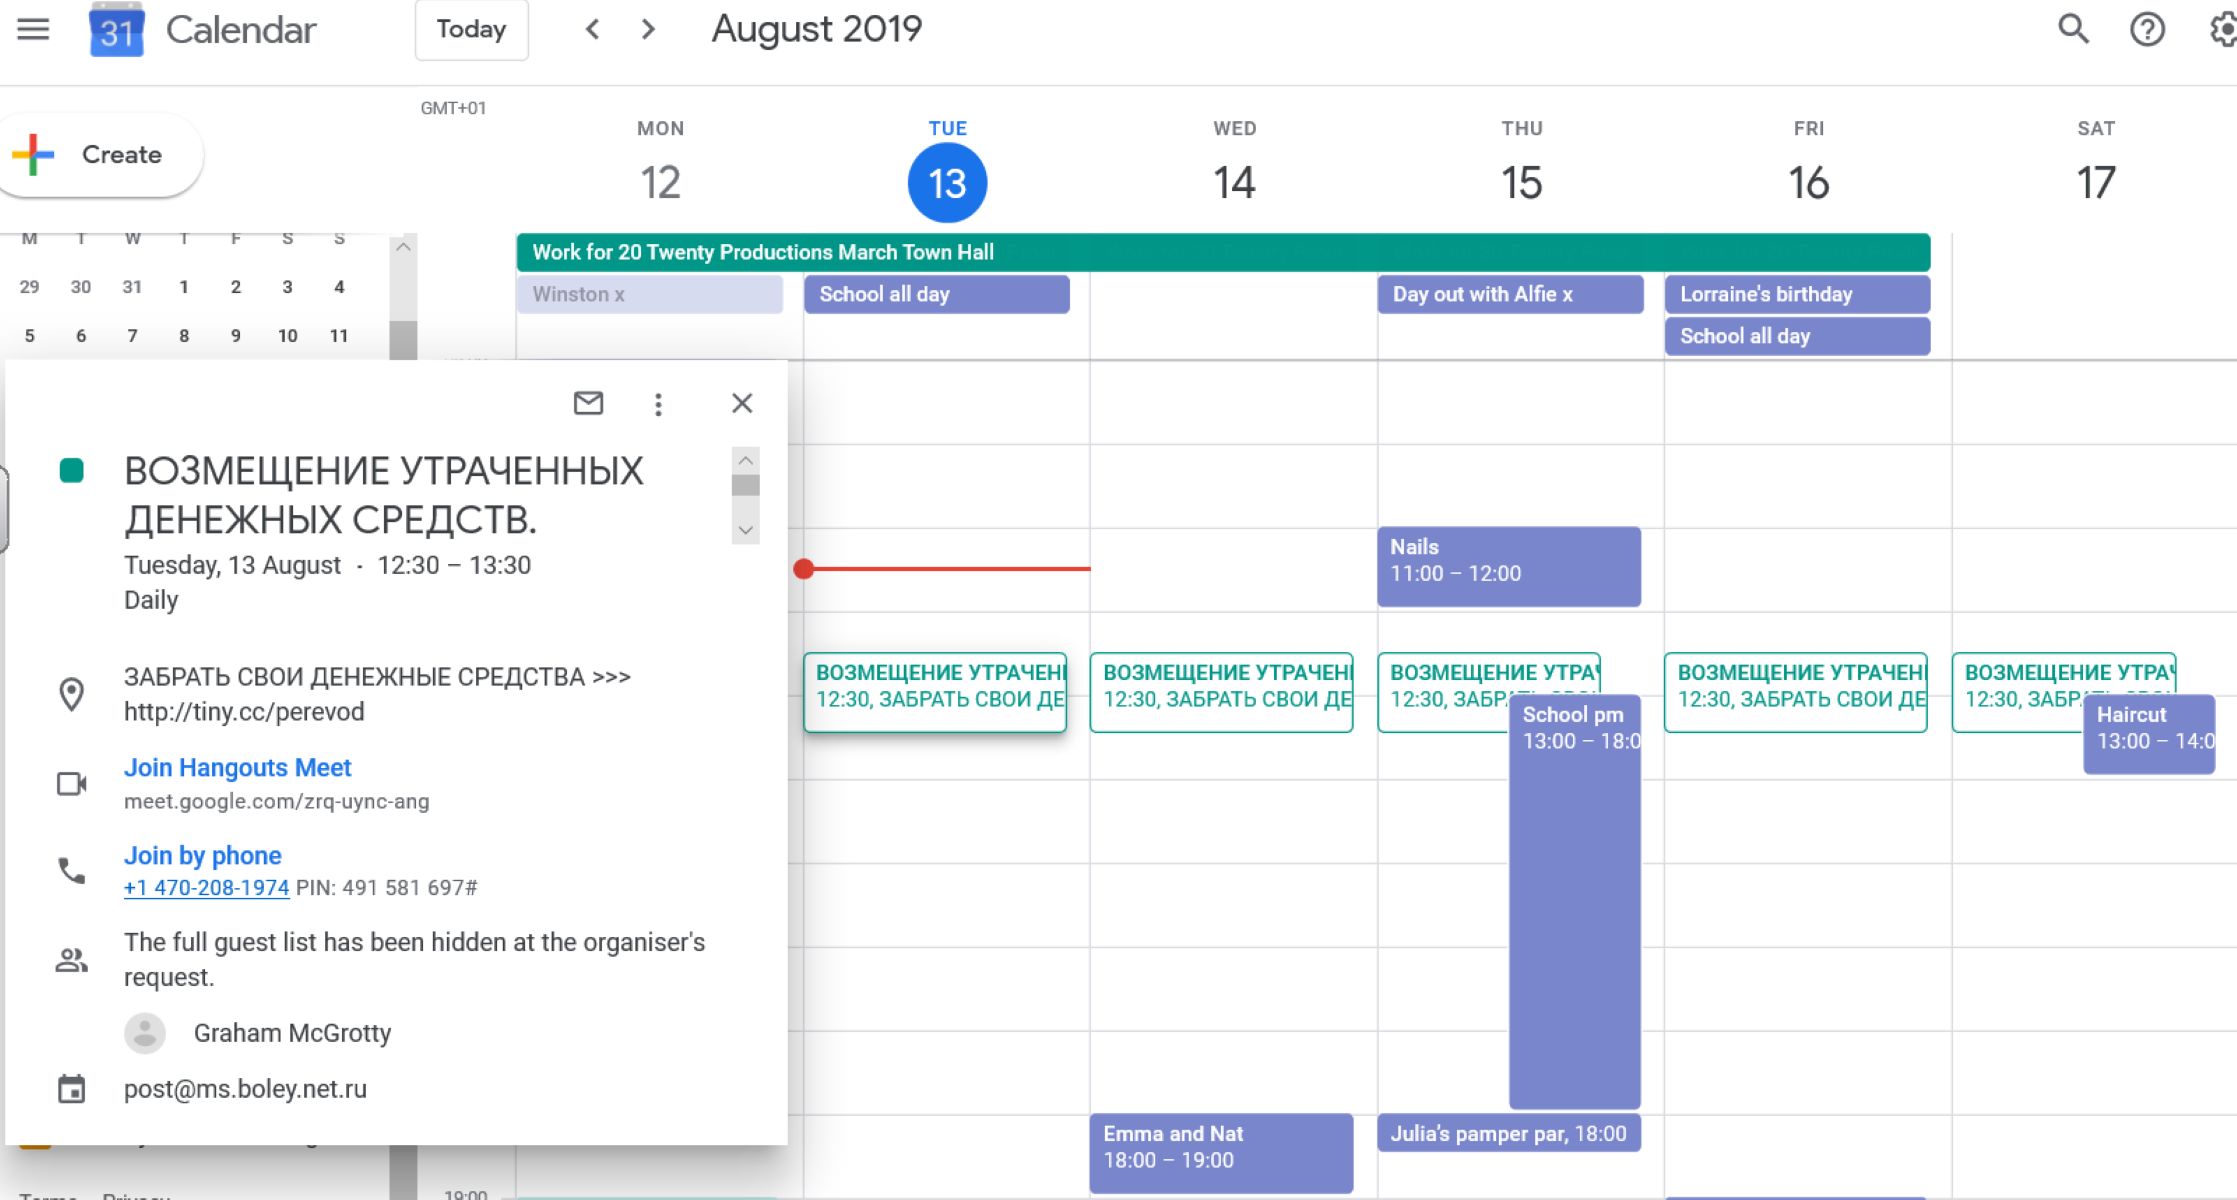 How To Delete A Google Calendar Event